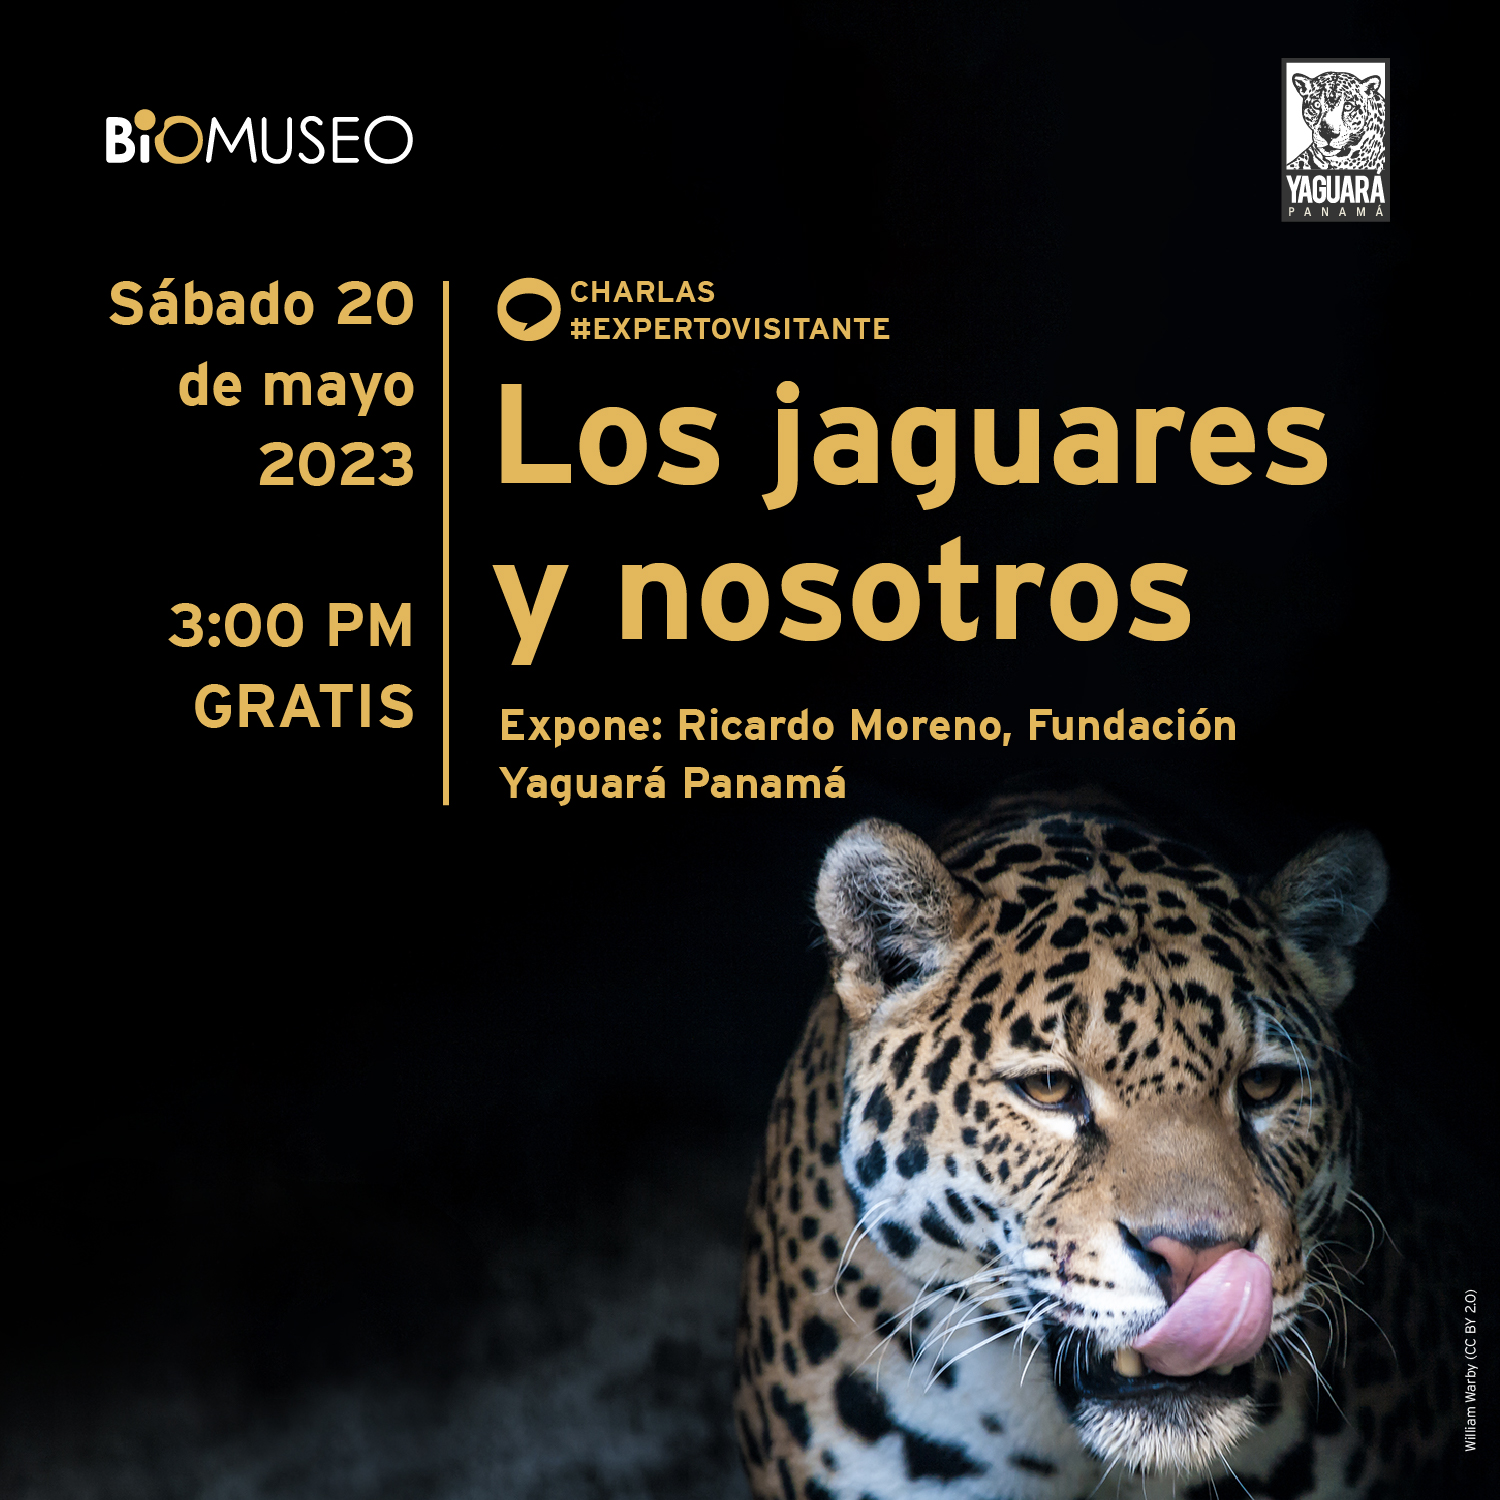 Experto visitante: Los jaguares y nosotros